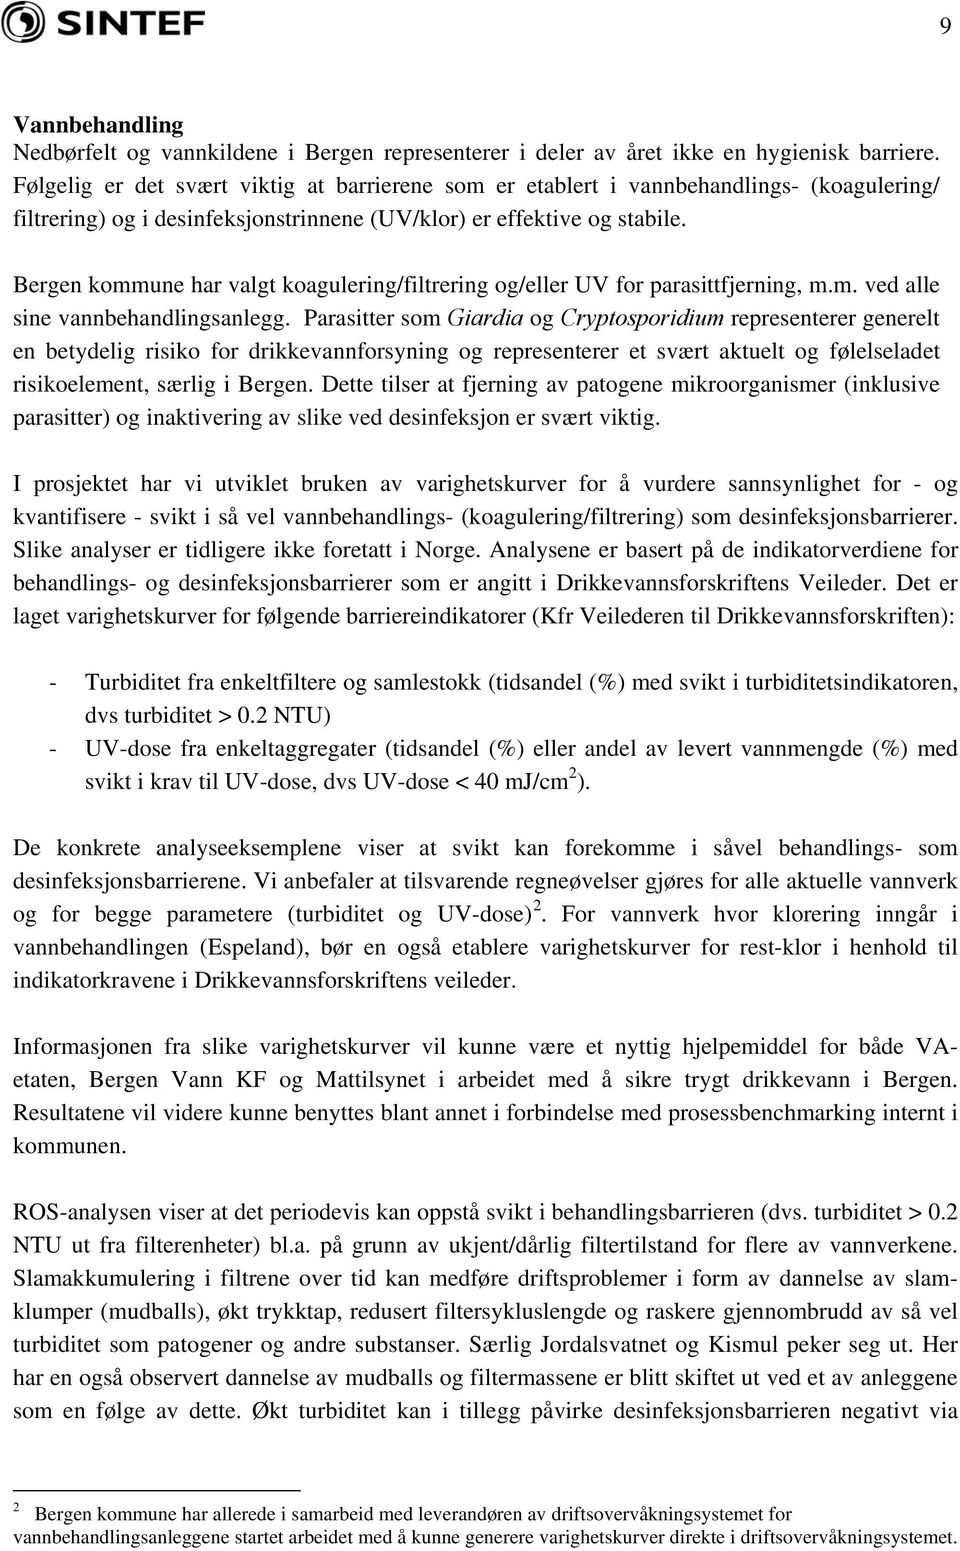 Bergen kommune har valgt koagulering/filtrering og/eller UV for parasittfjerning, m.m. ved alle sine vannbehandlingsanlegg.